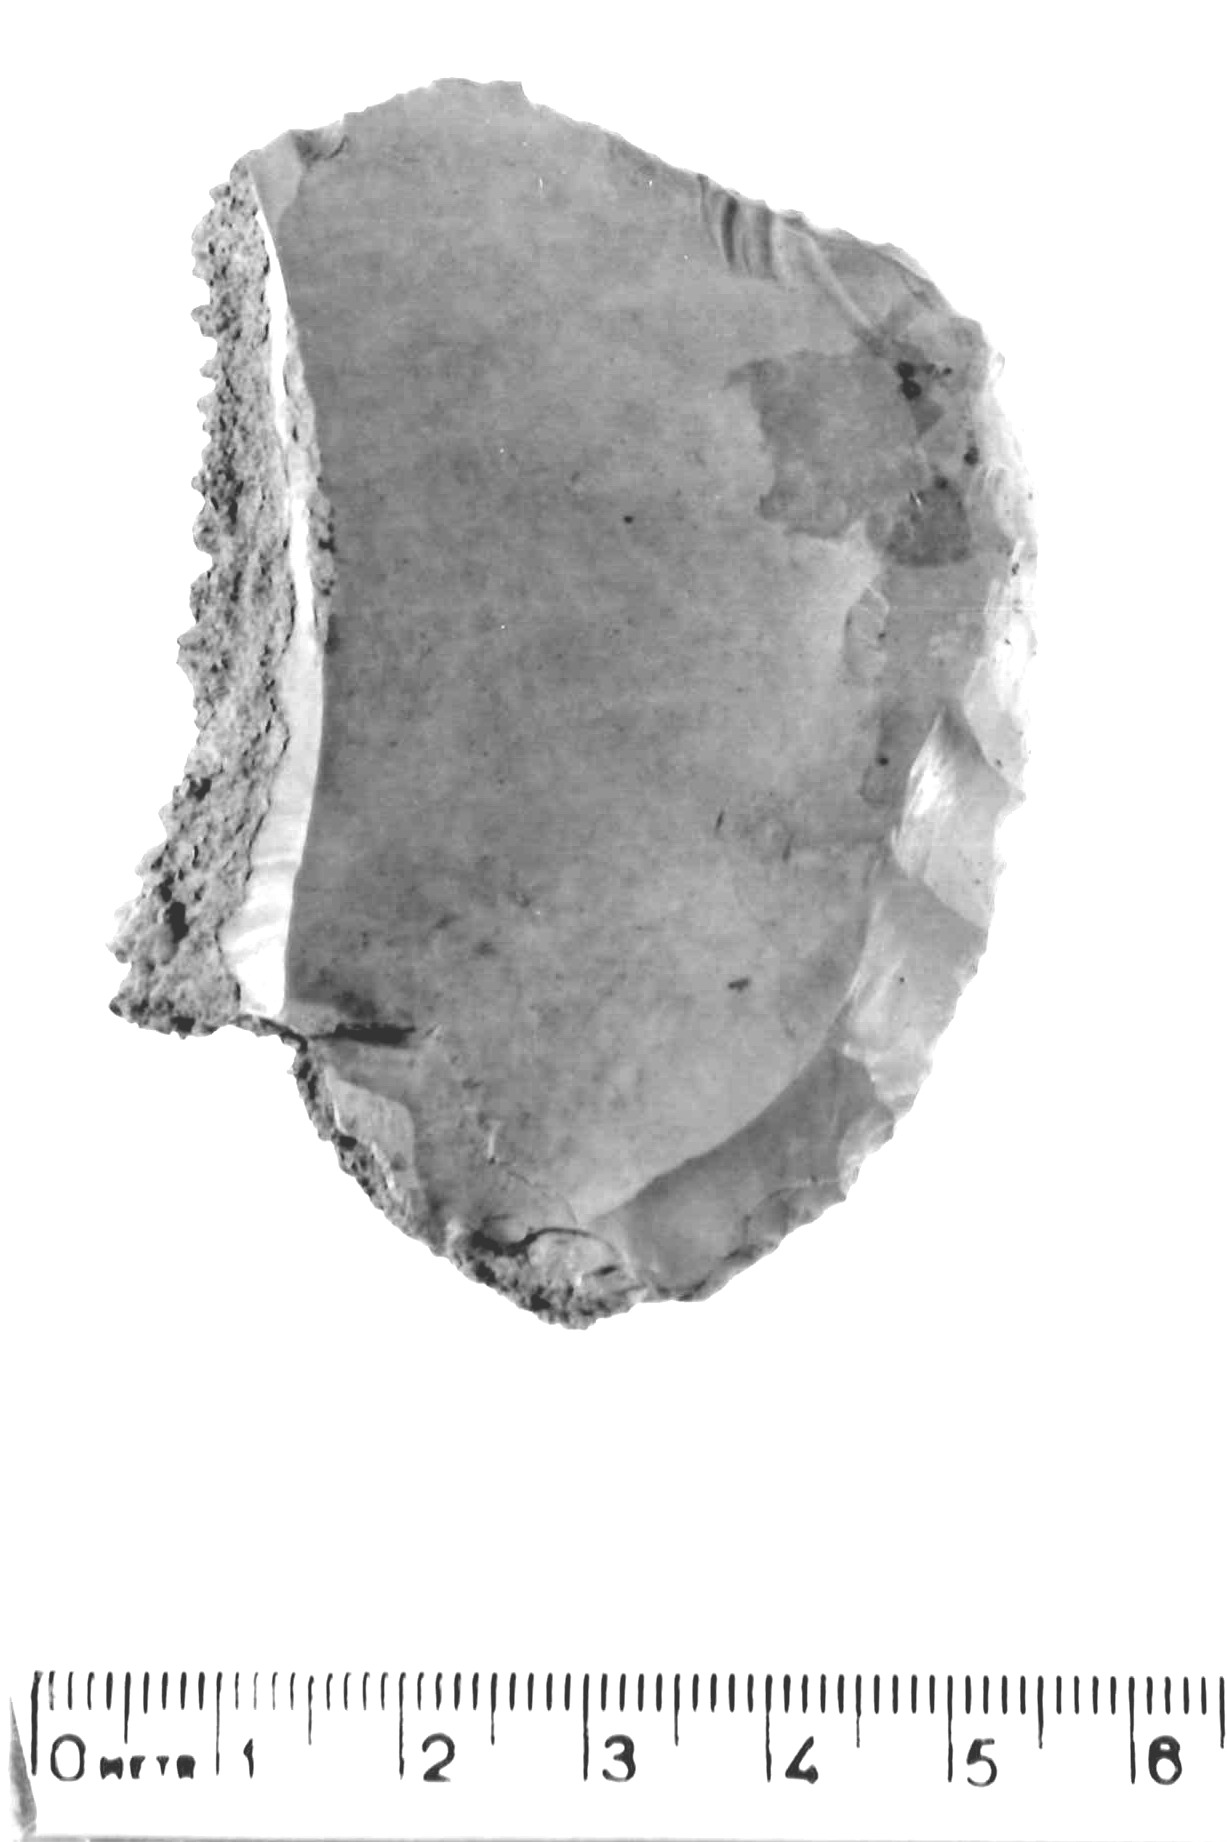 raschiatoio laterale - musteriano (paleolitico medio)